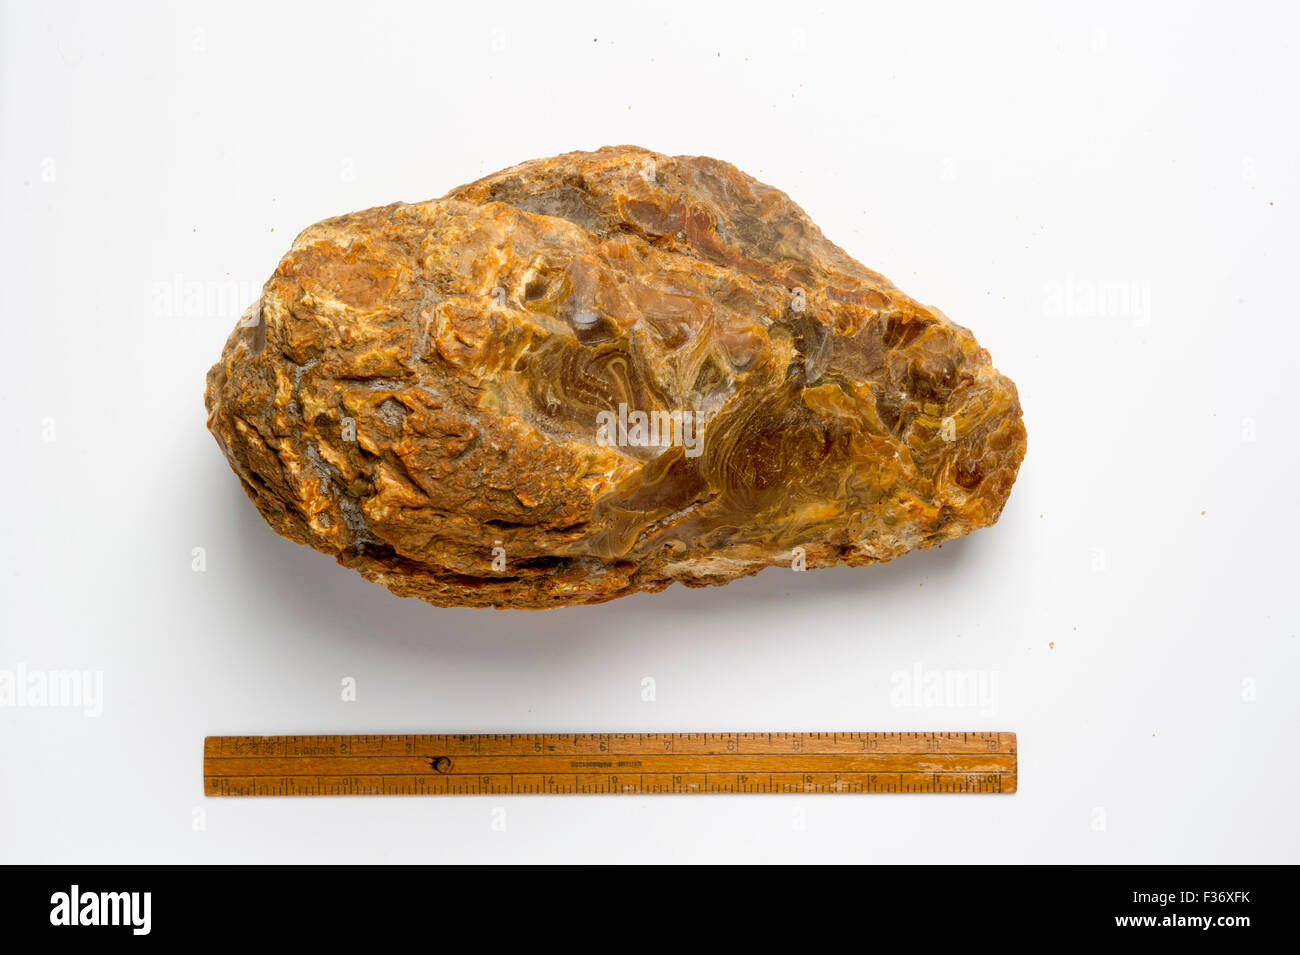 Grand morceau de gomme d'arbre Kauri fossilisés. Trouvé dans la Bay of Islands, Nouvelle-Zélande. Banque D'Images